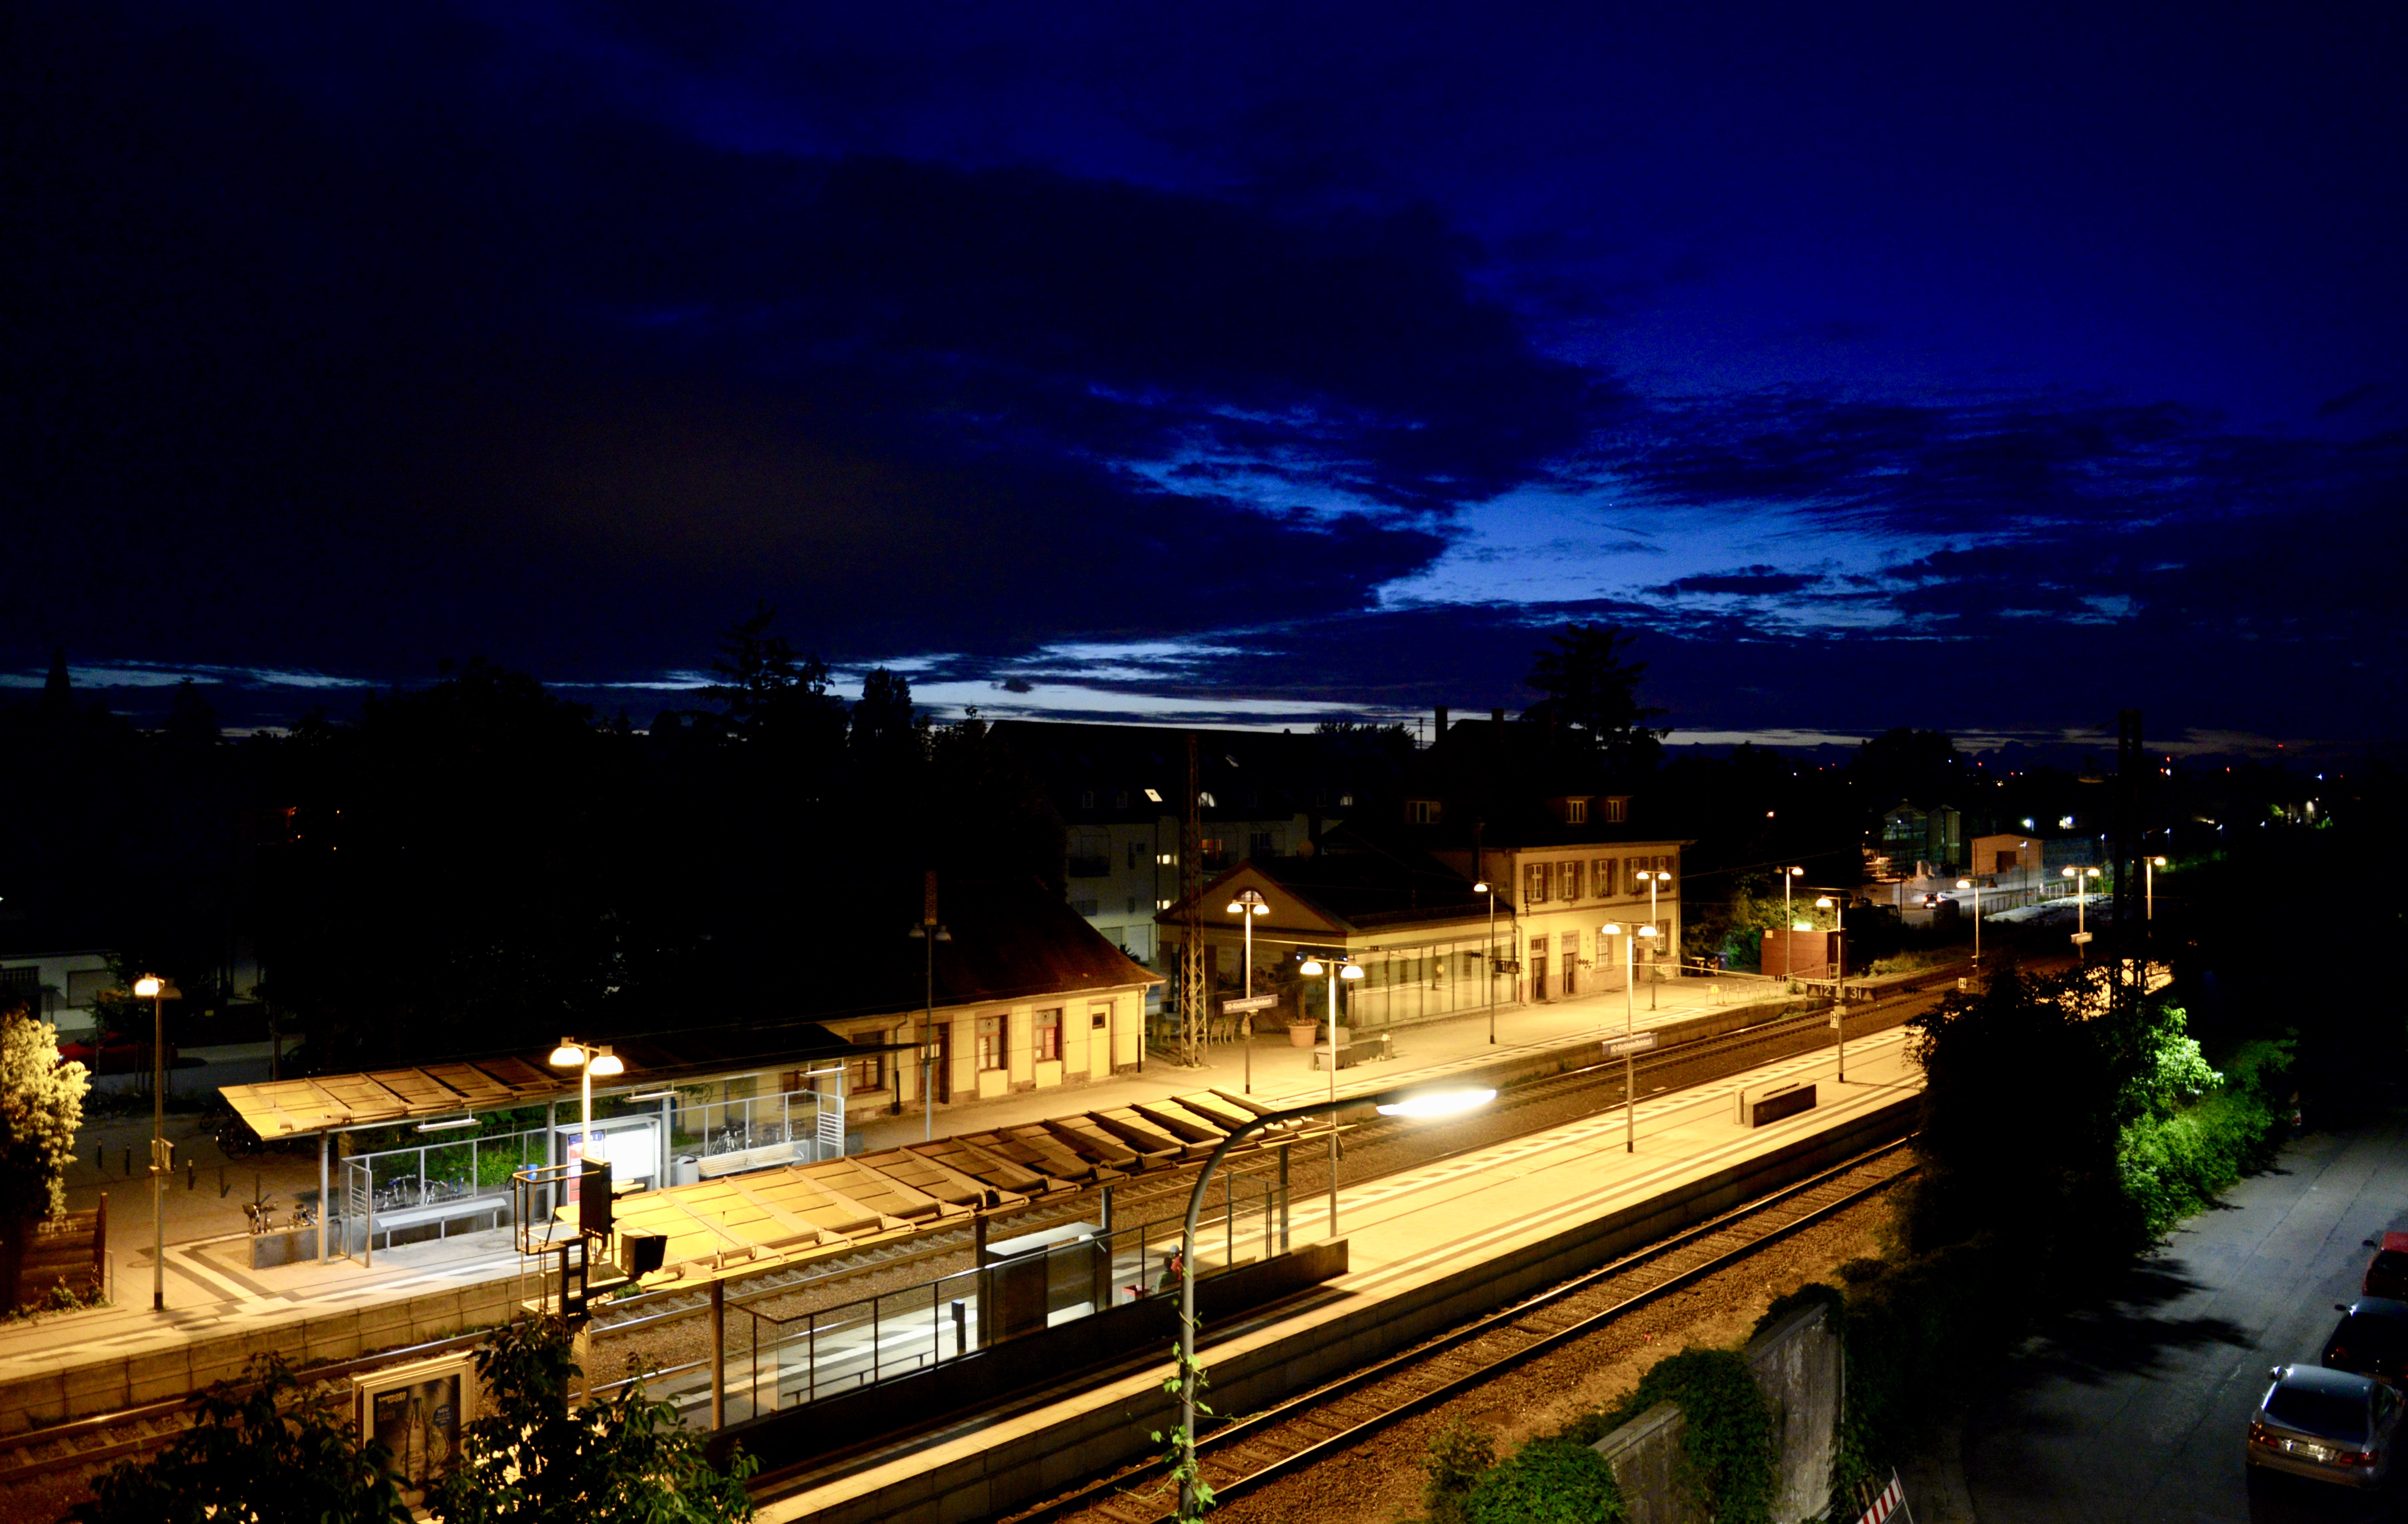 Datei:Bahnhof Kirchheim bei Nacht.jpg